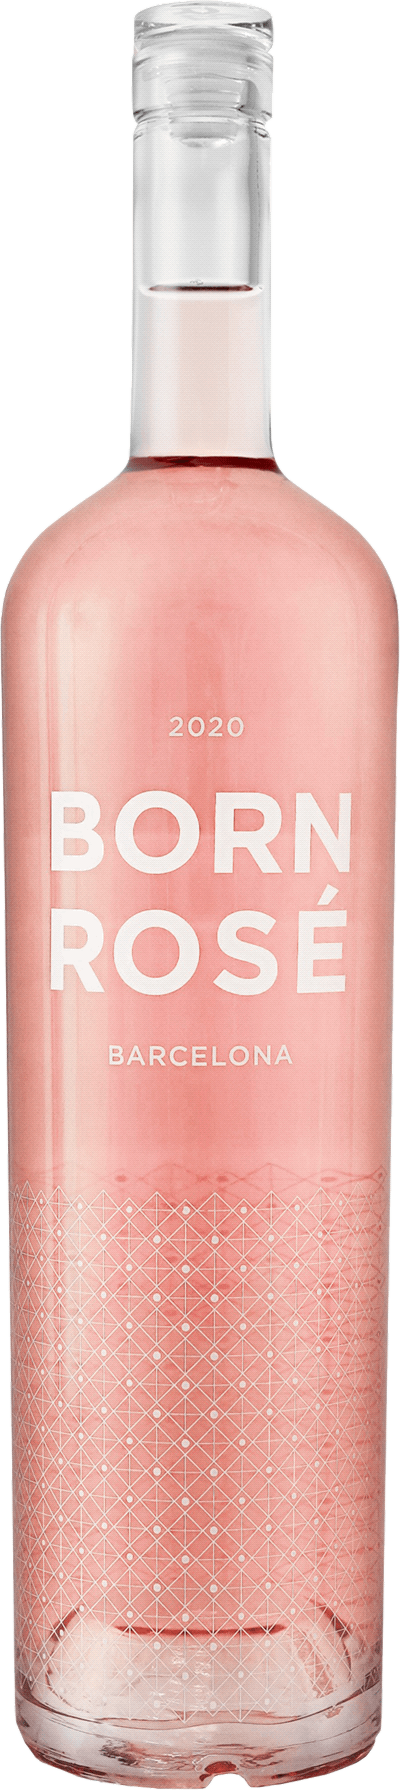 Born Rosé Barcelona Dubbelmagnum, 2021